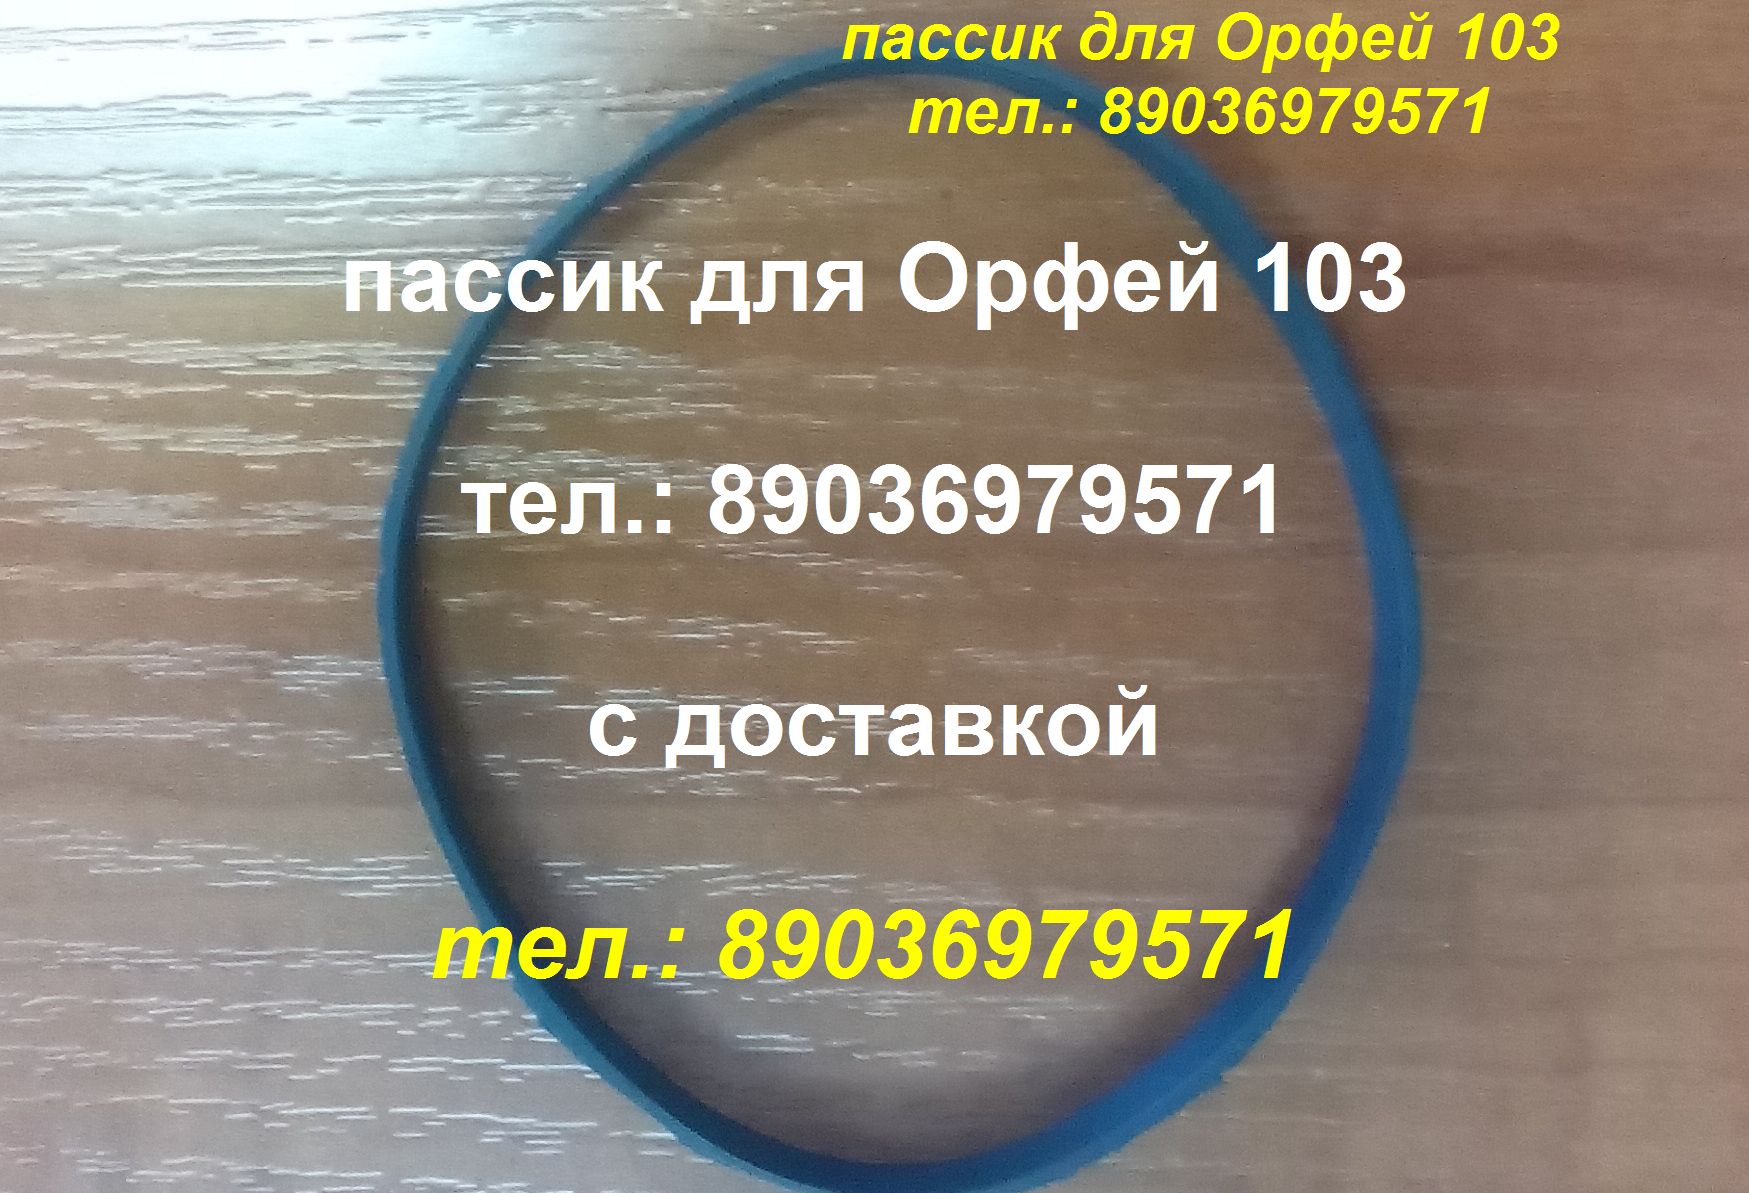 Пассик для Орфея 103 пассик для Орфей 103 пасик Орфей в городе Москва, фото 1, Московская область